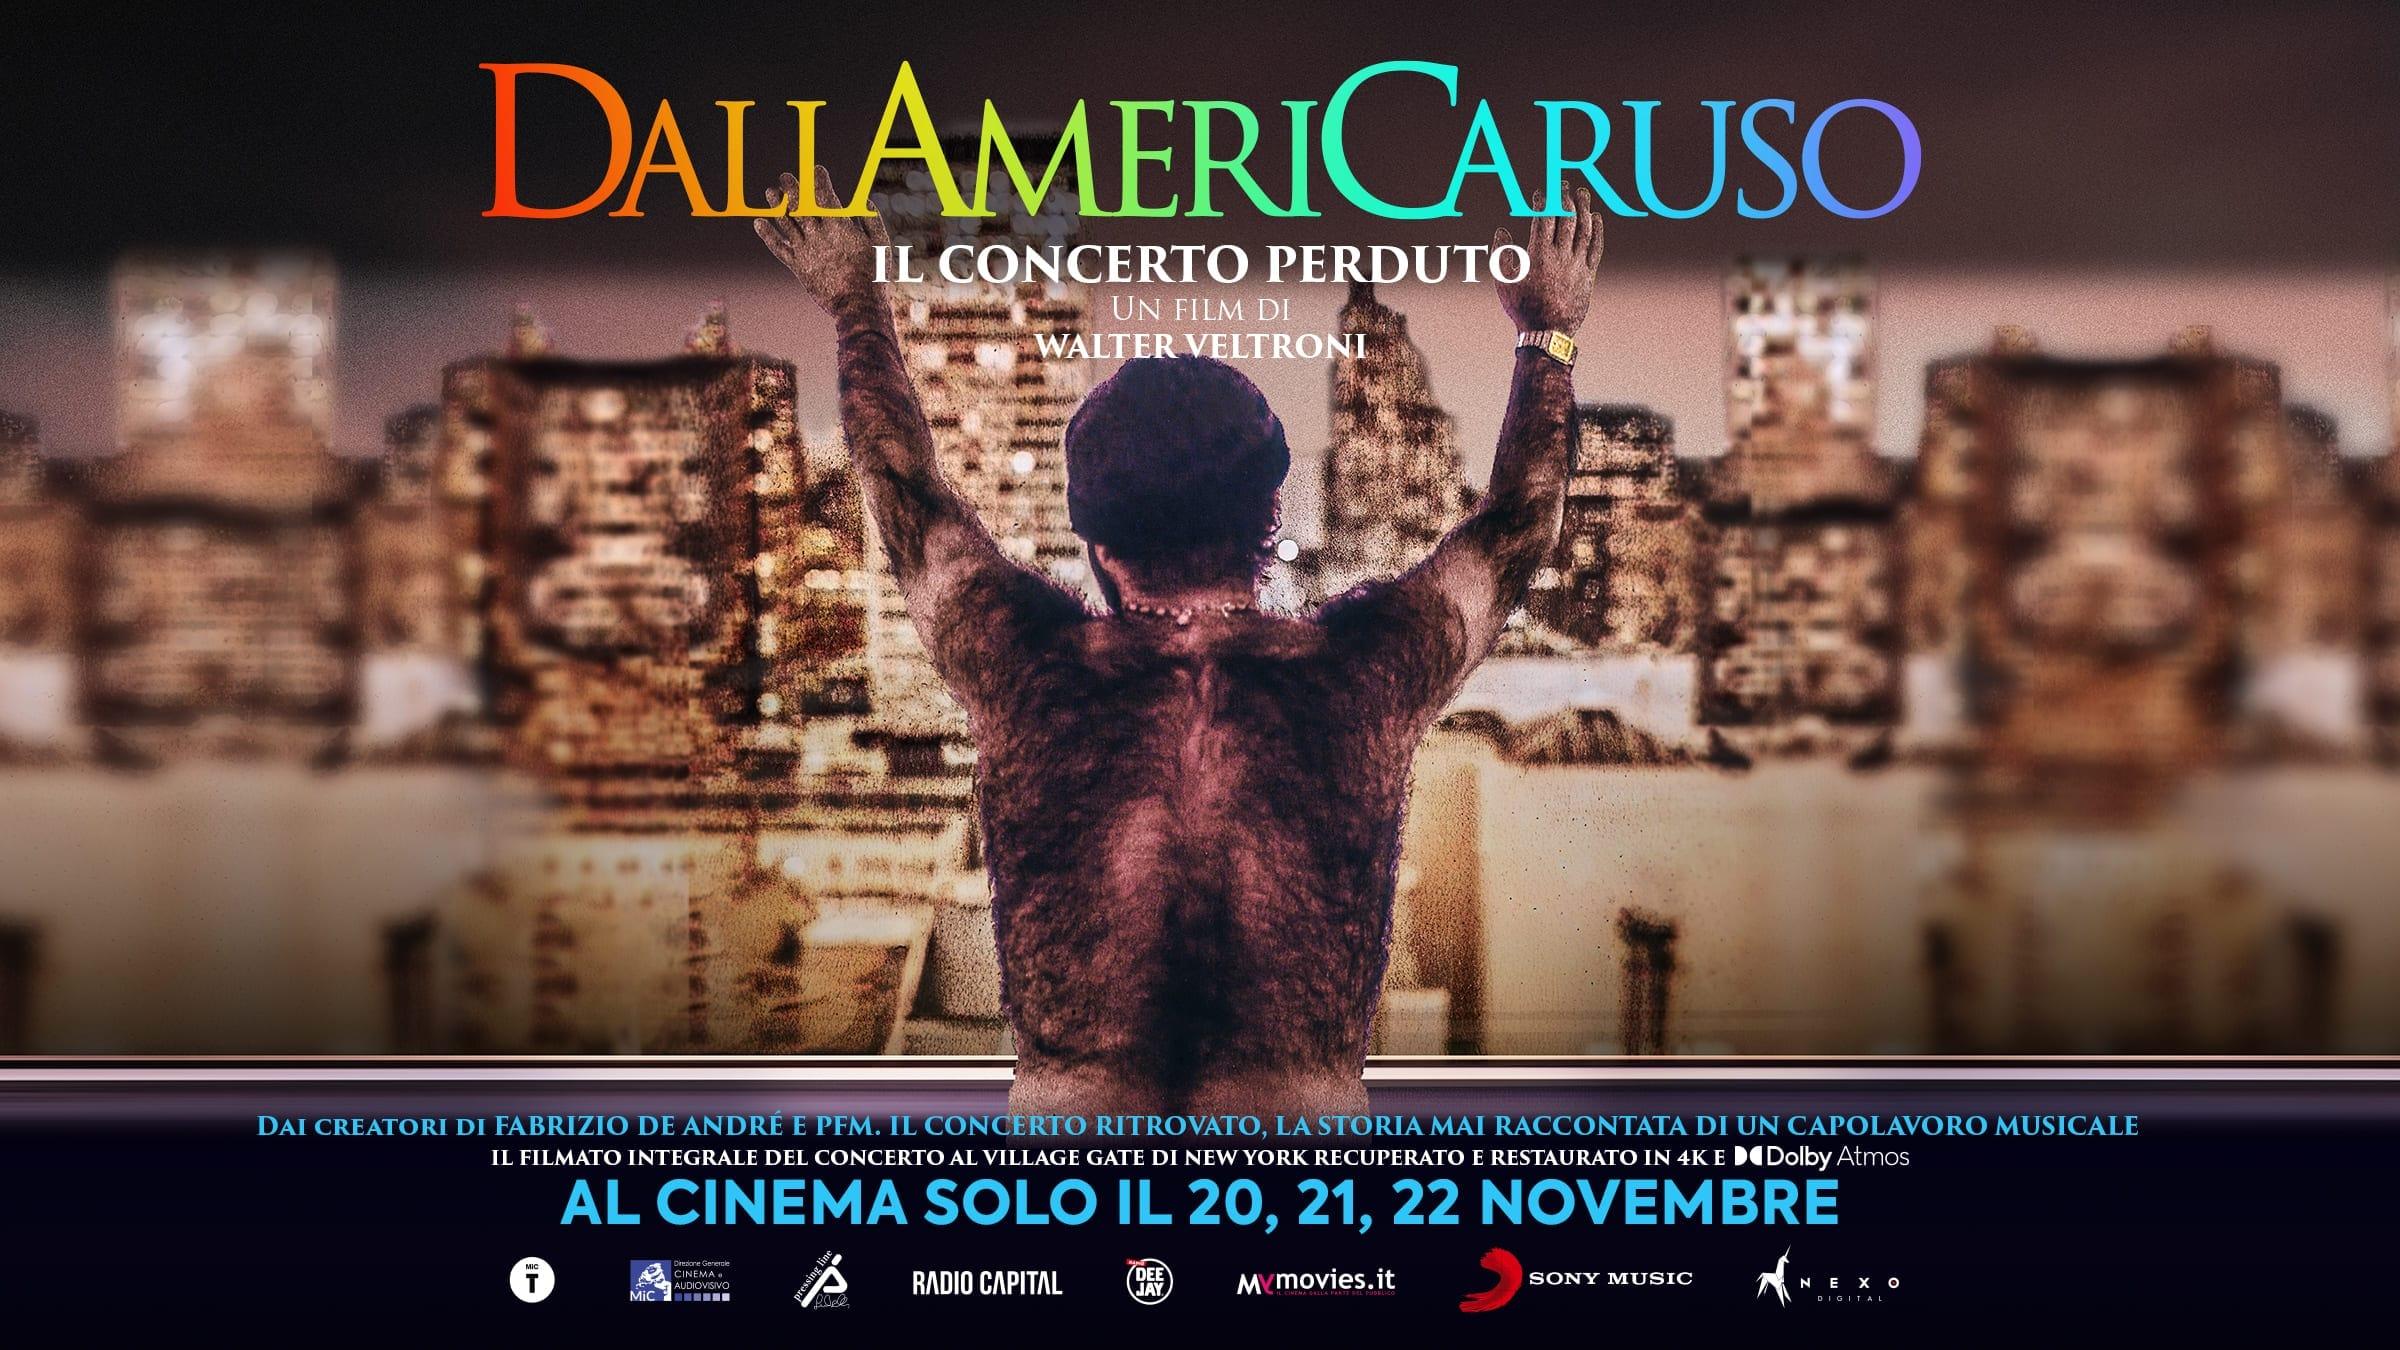 DallAmeriCaruso - Il concerto perduto backdrop